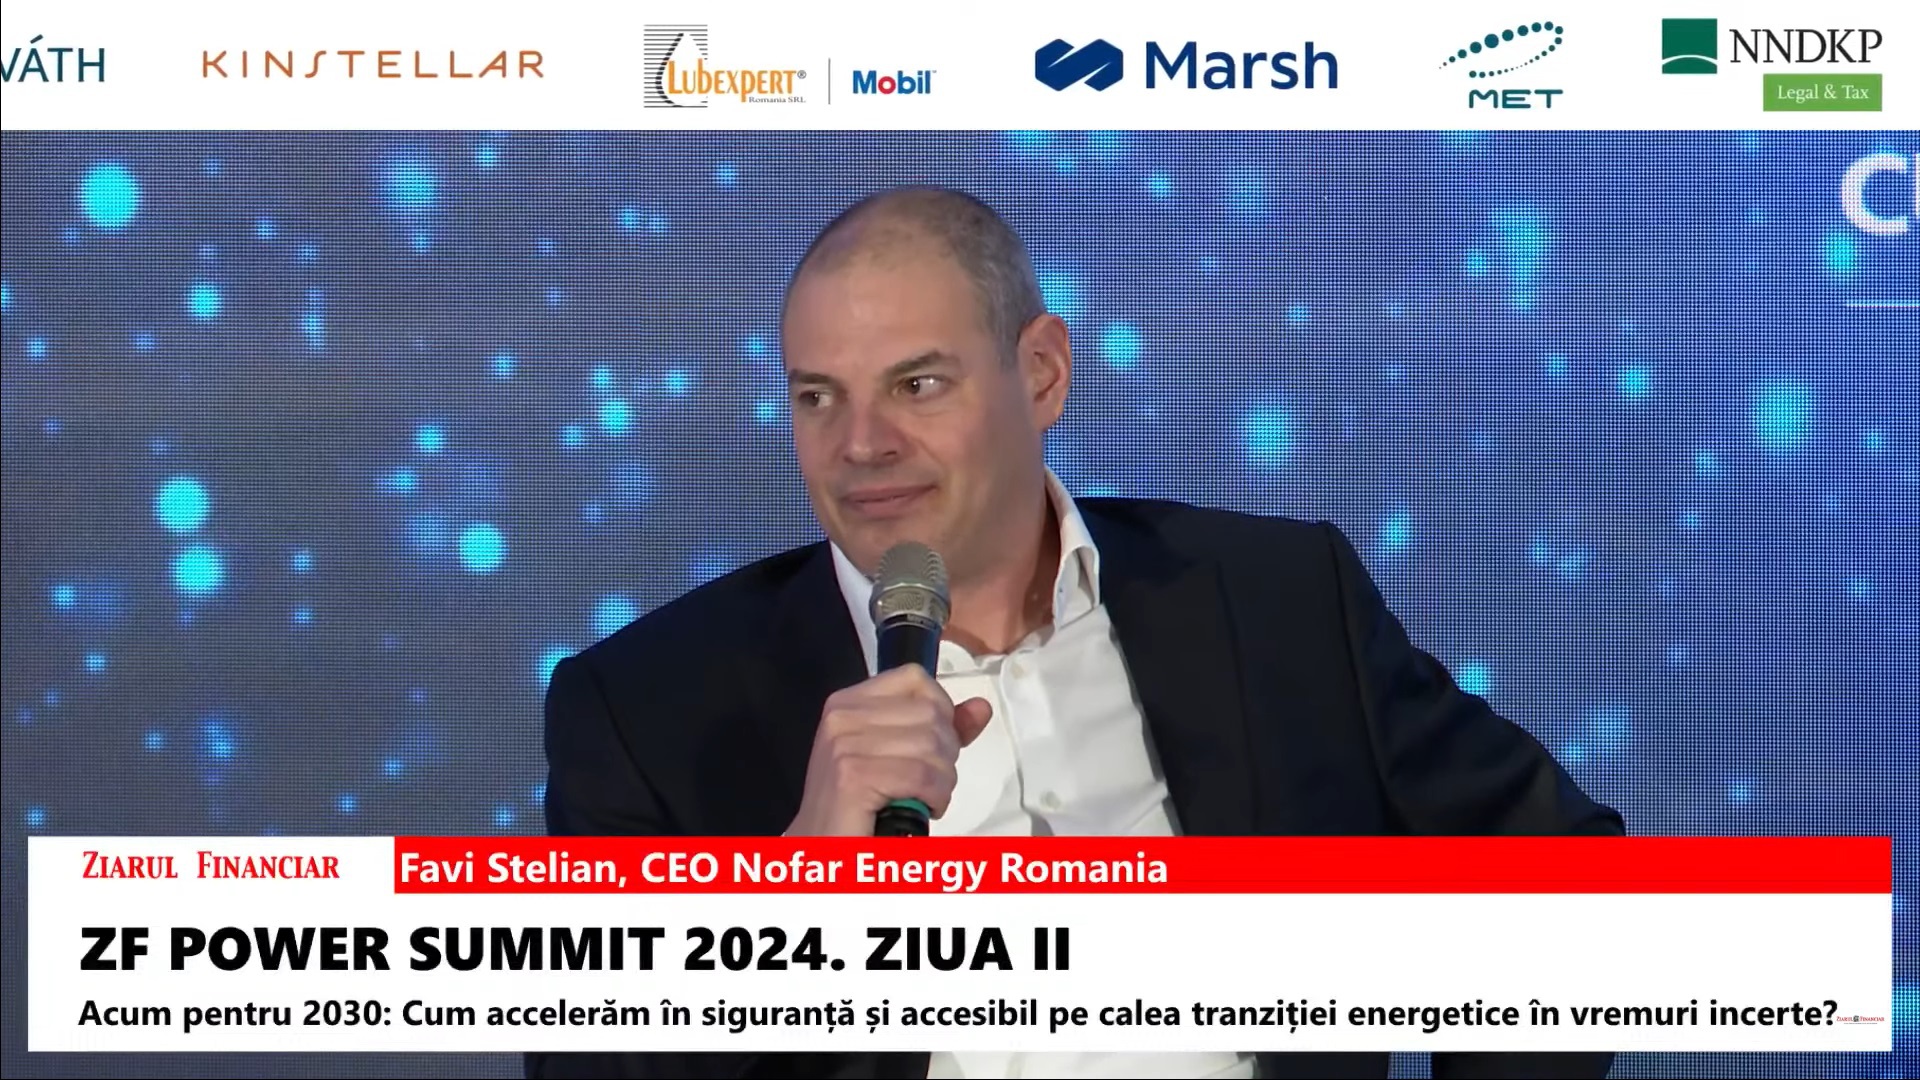 Favi Stelian, Nofar Energy Romania: Avem circa 700 MW în proiecte fotovoltaice şi am putea ajunge la 1 GW până la finalul anului. Noi chiar o să construim, avem panourile, avem EPC-urile, avem şi finanţare